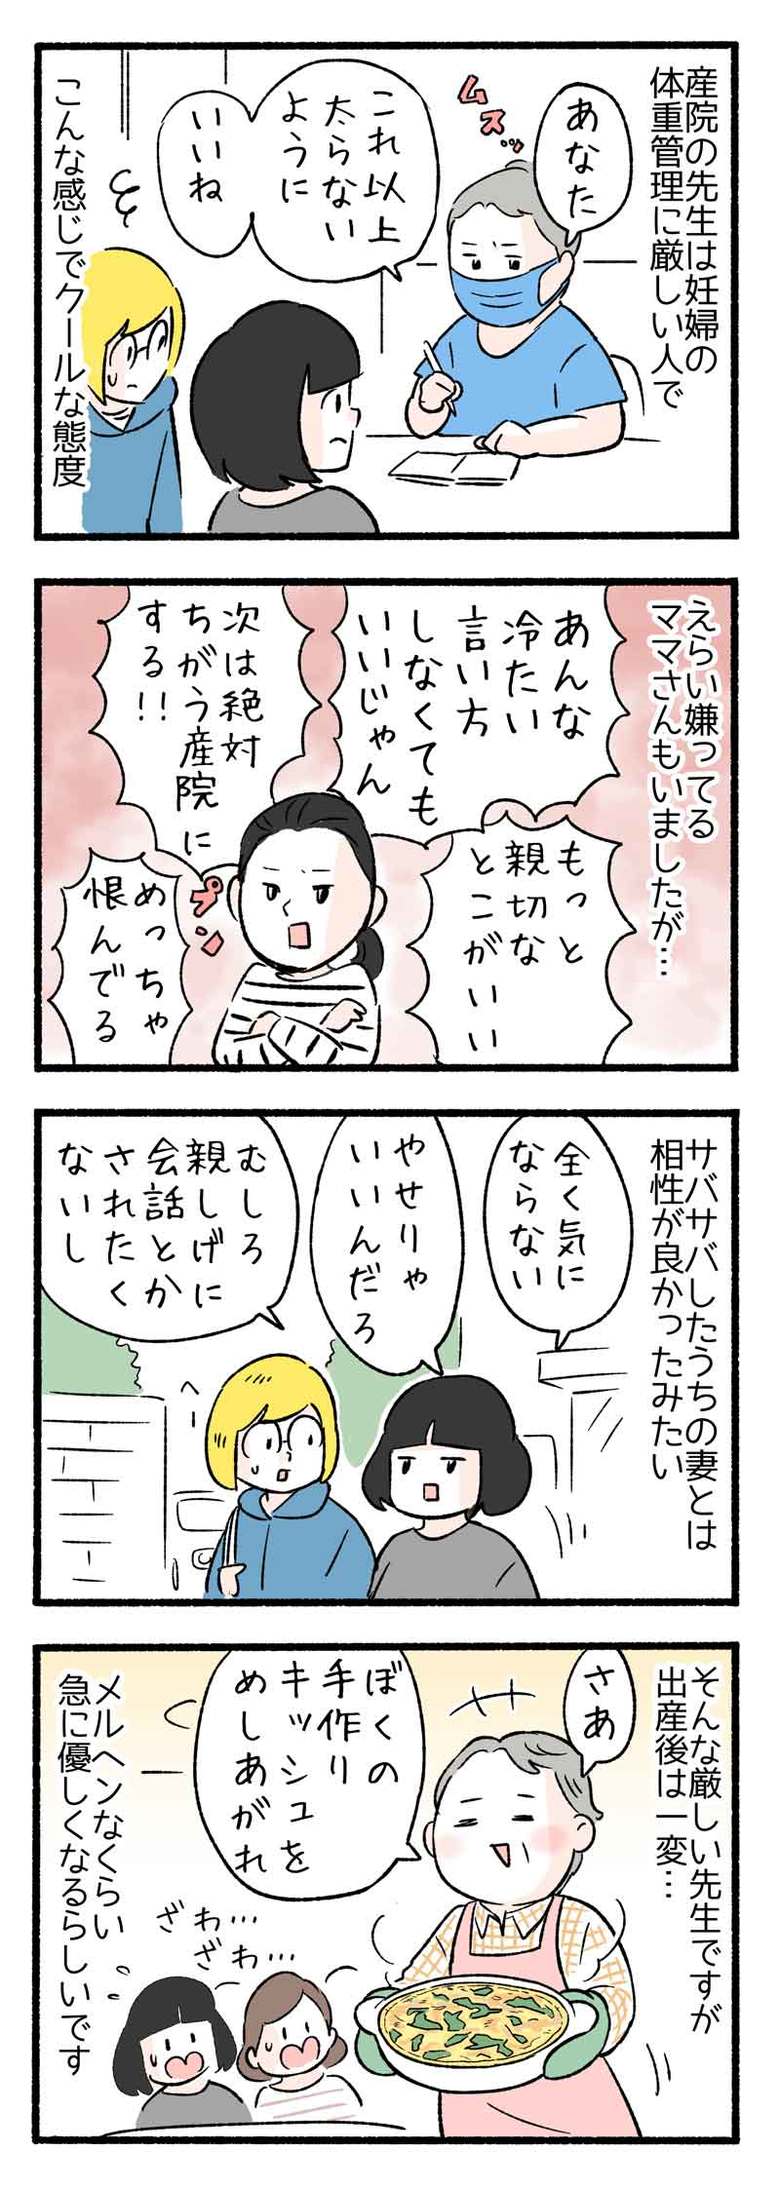 manga-nihipapa6-4